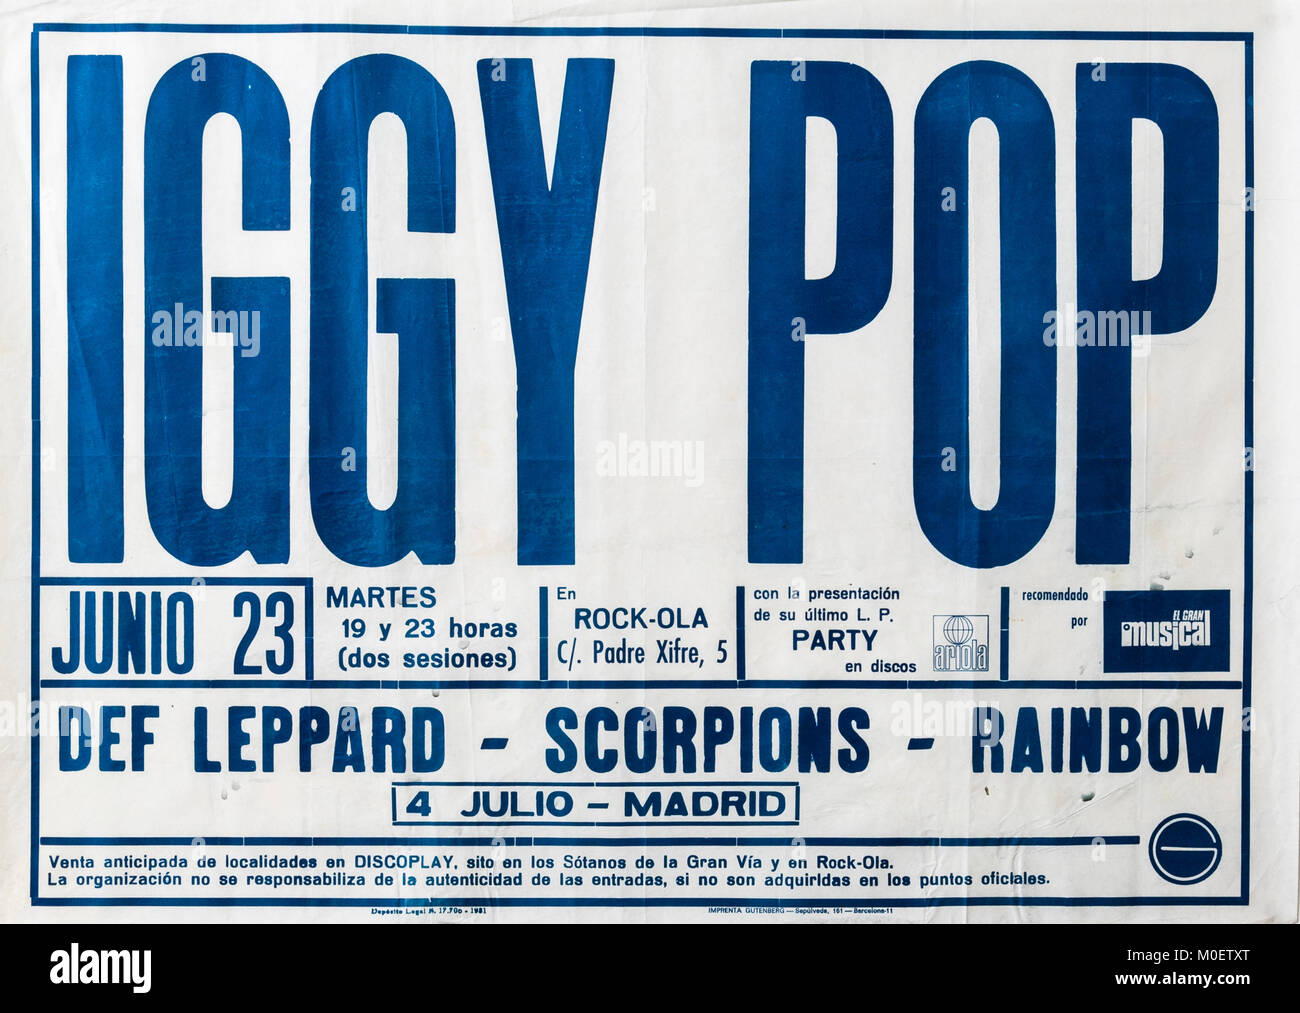 Iggy Pop, Def Leppard, Scorpions, Rainbow en concierto, Madrid 1981. Cartel musical del concierto. Rock.Ola Foto de stock